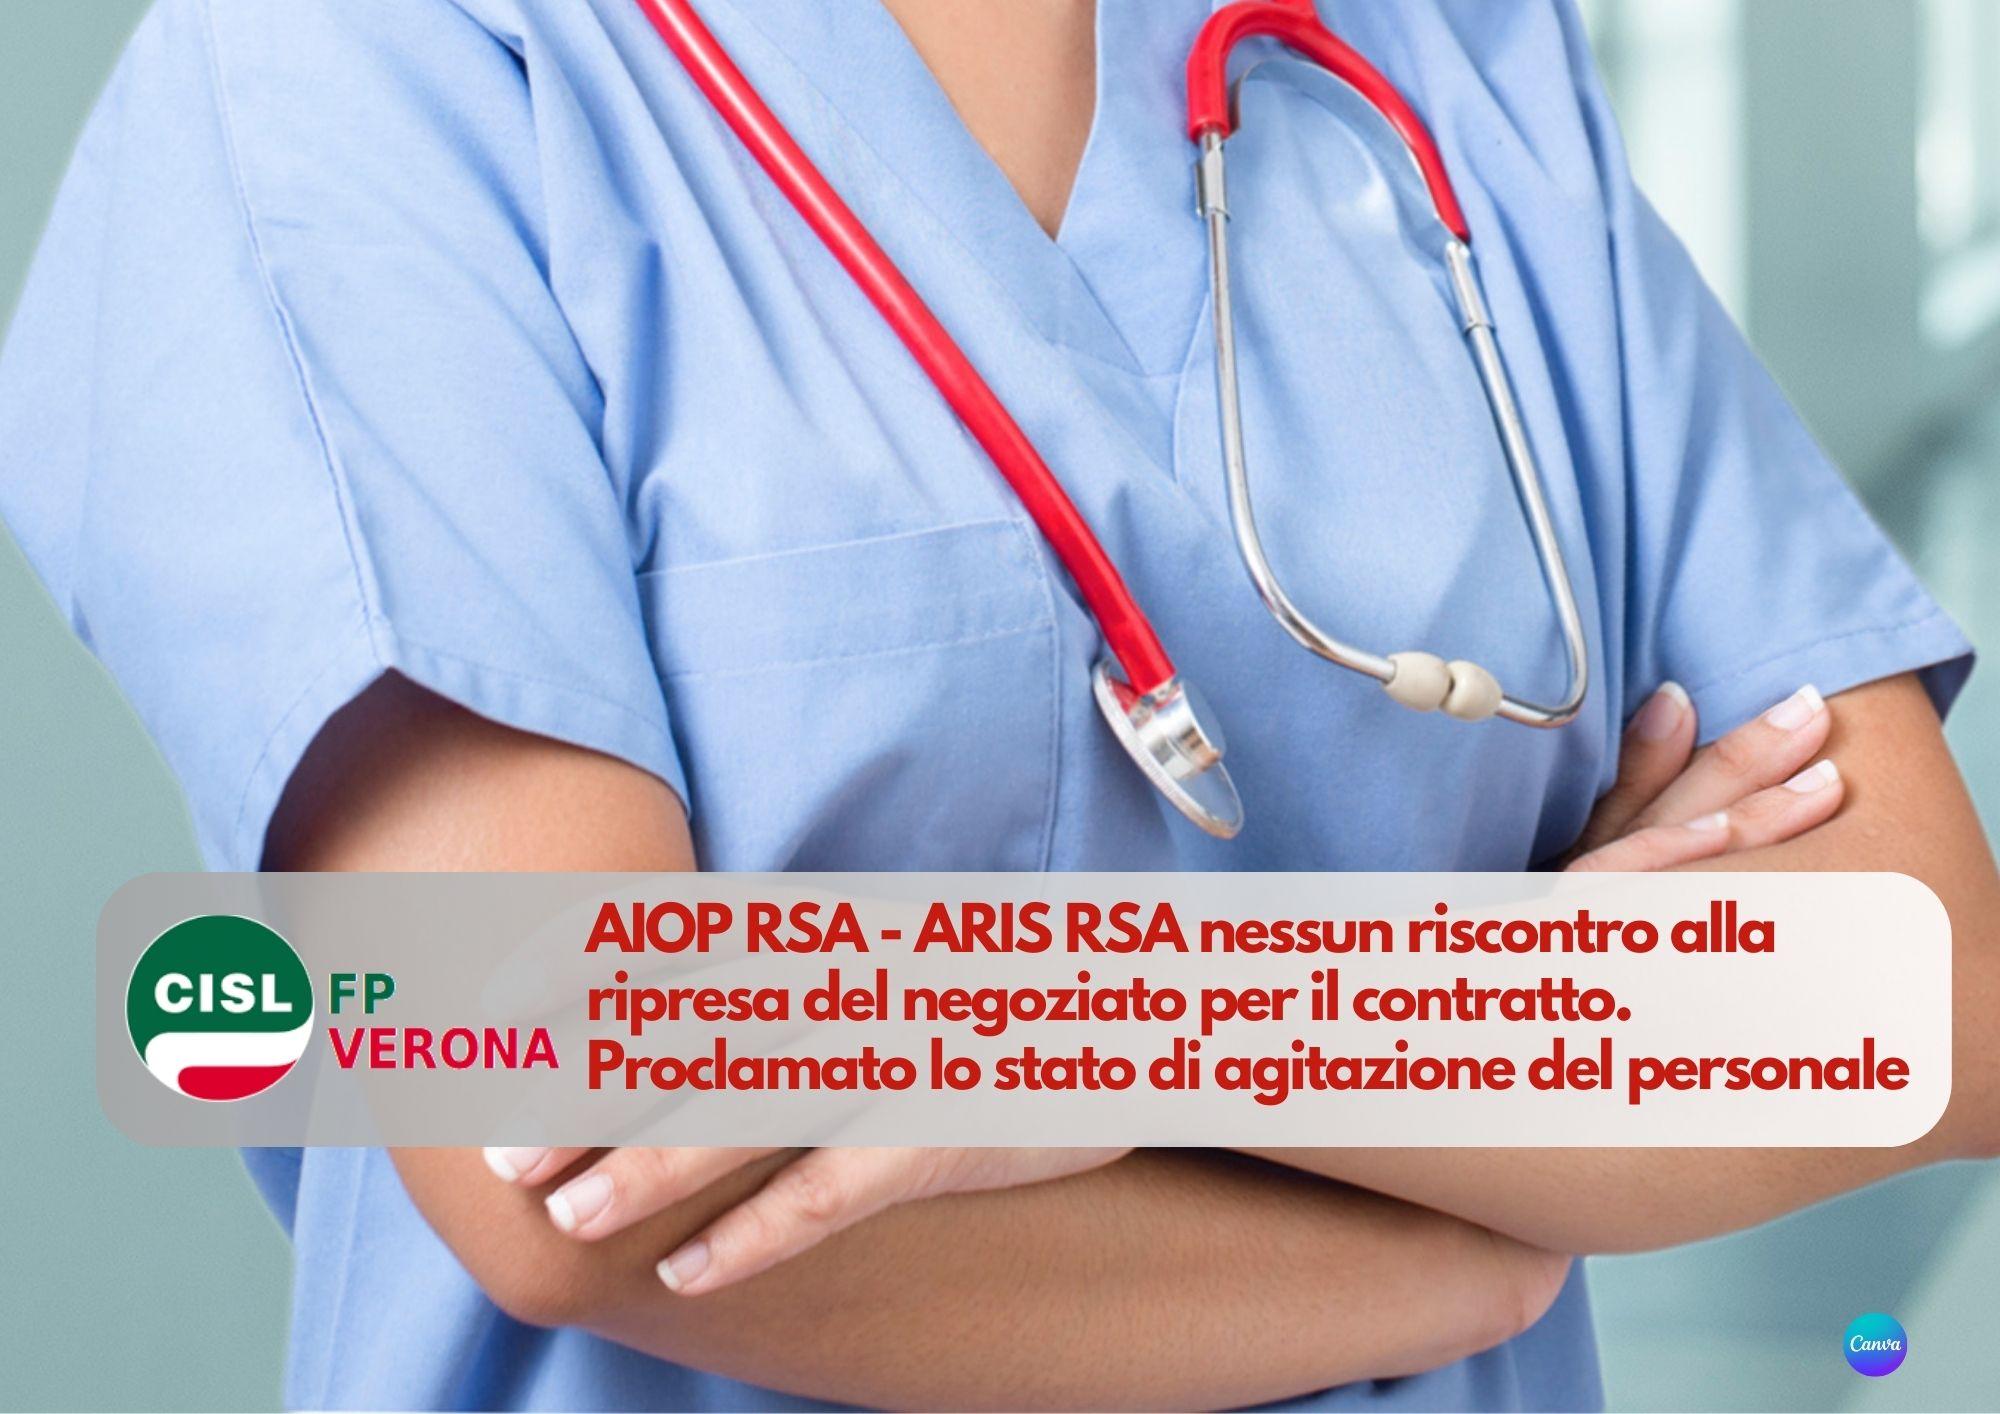 CISL FP Verona. AIOP RSA - ARIS RSA nessun riscontro. Stato di agitazione, verso la mobilitazione.